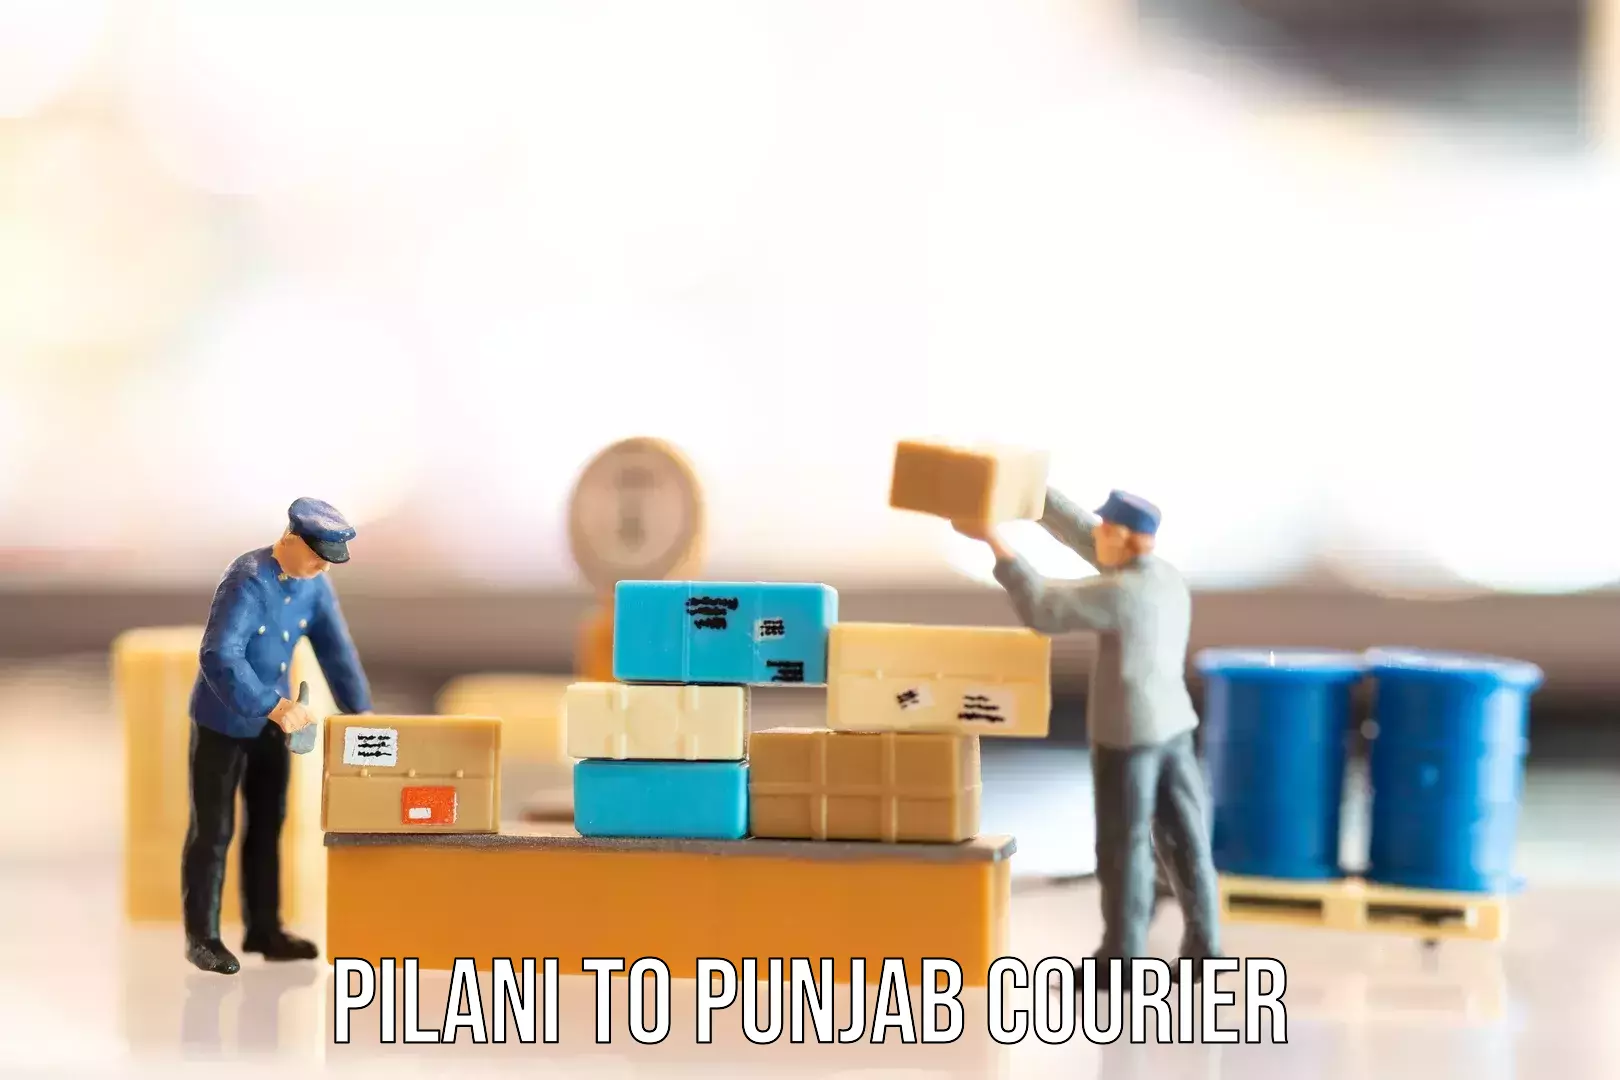 Luggage transport service Pilani to Punjab